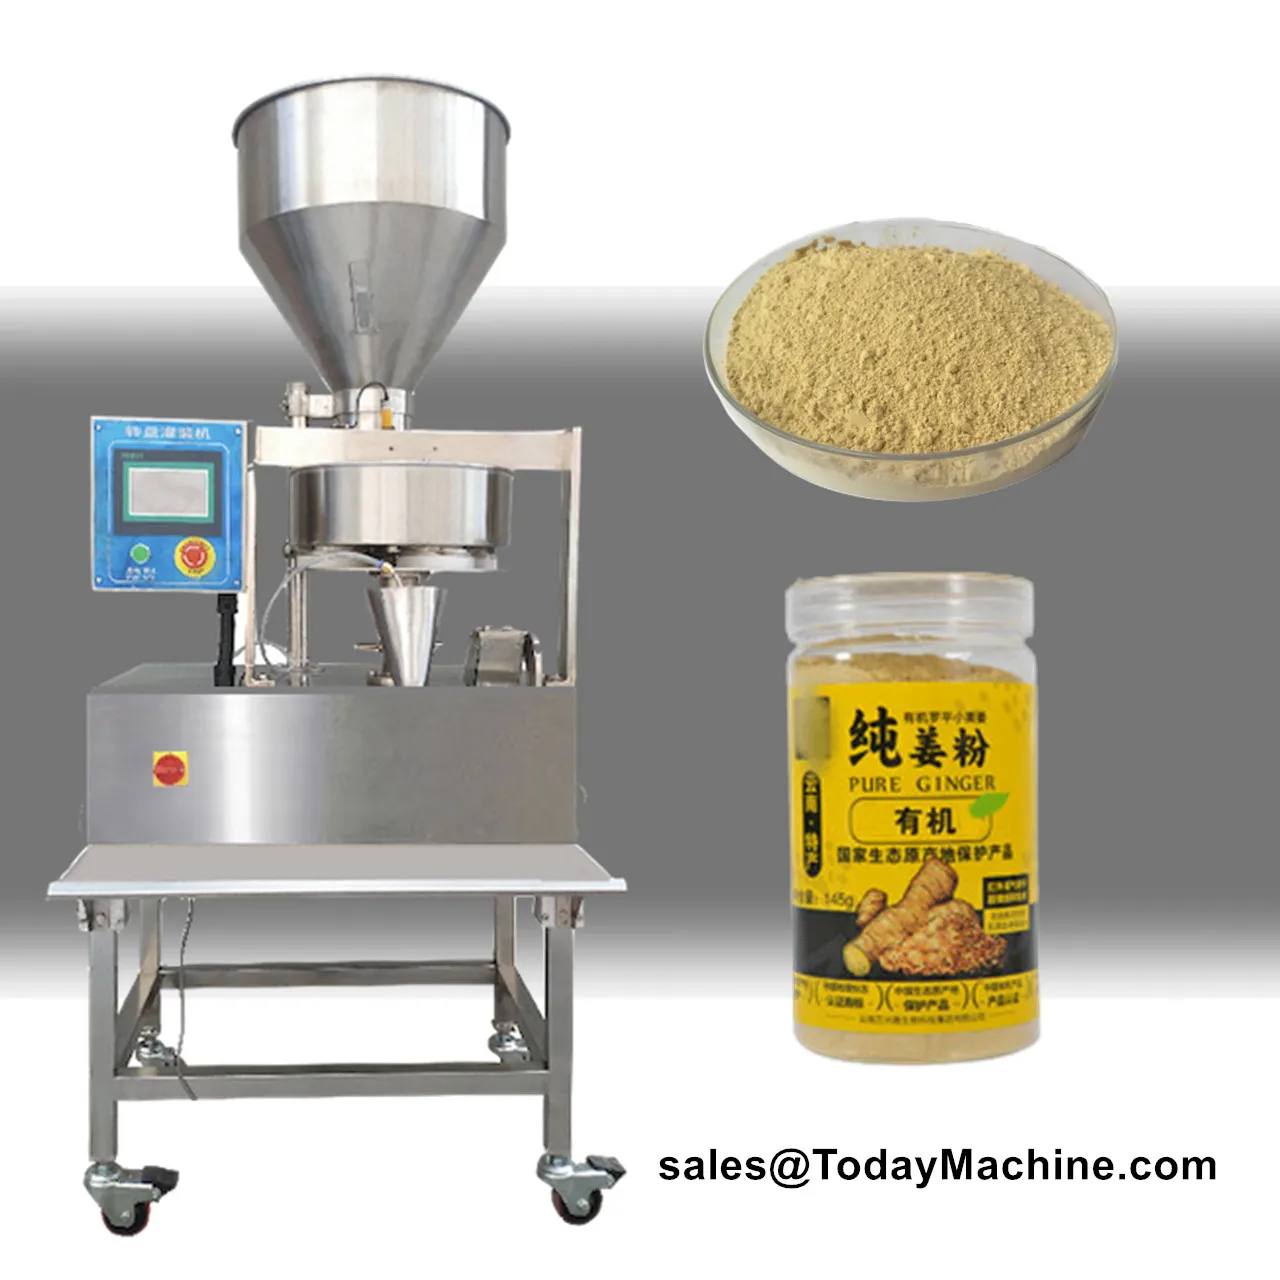 Автоматическая машина для розлива пищевых продуктов в зернах из смешанных орехов и кунжута с объемным стаканом и бункерами